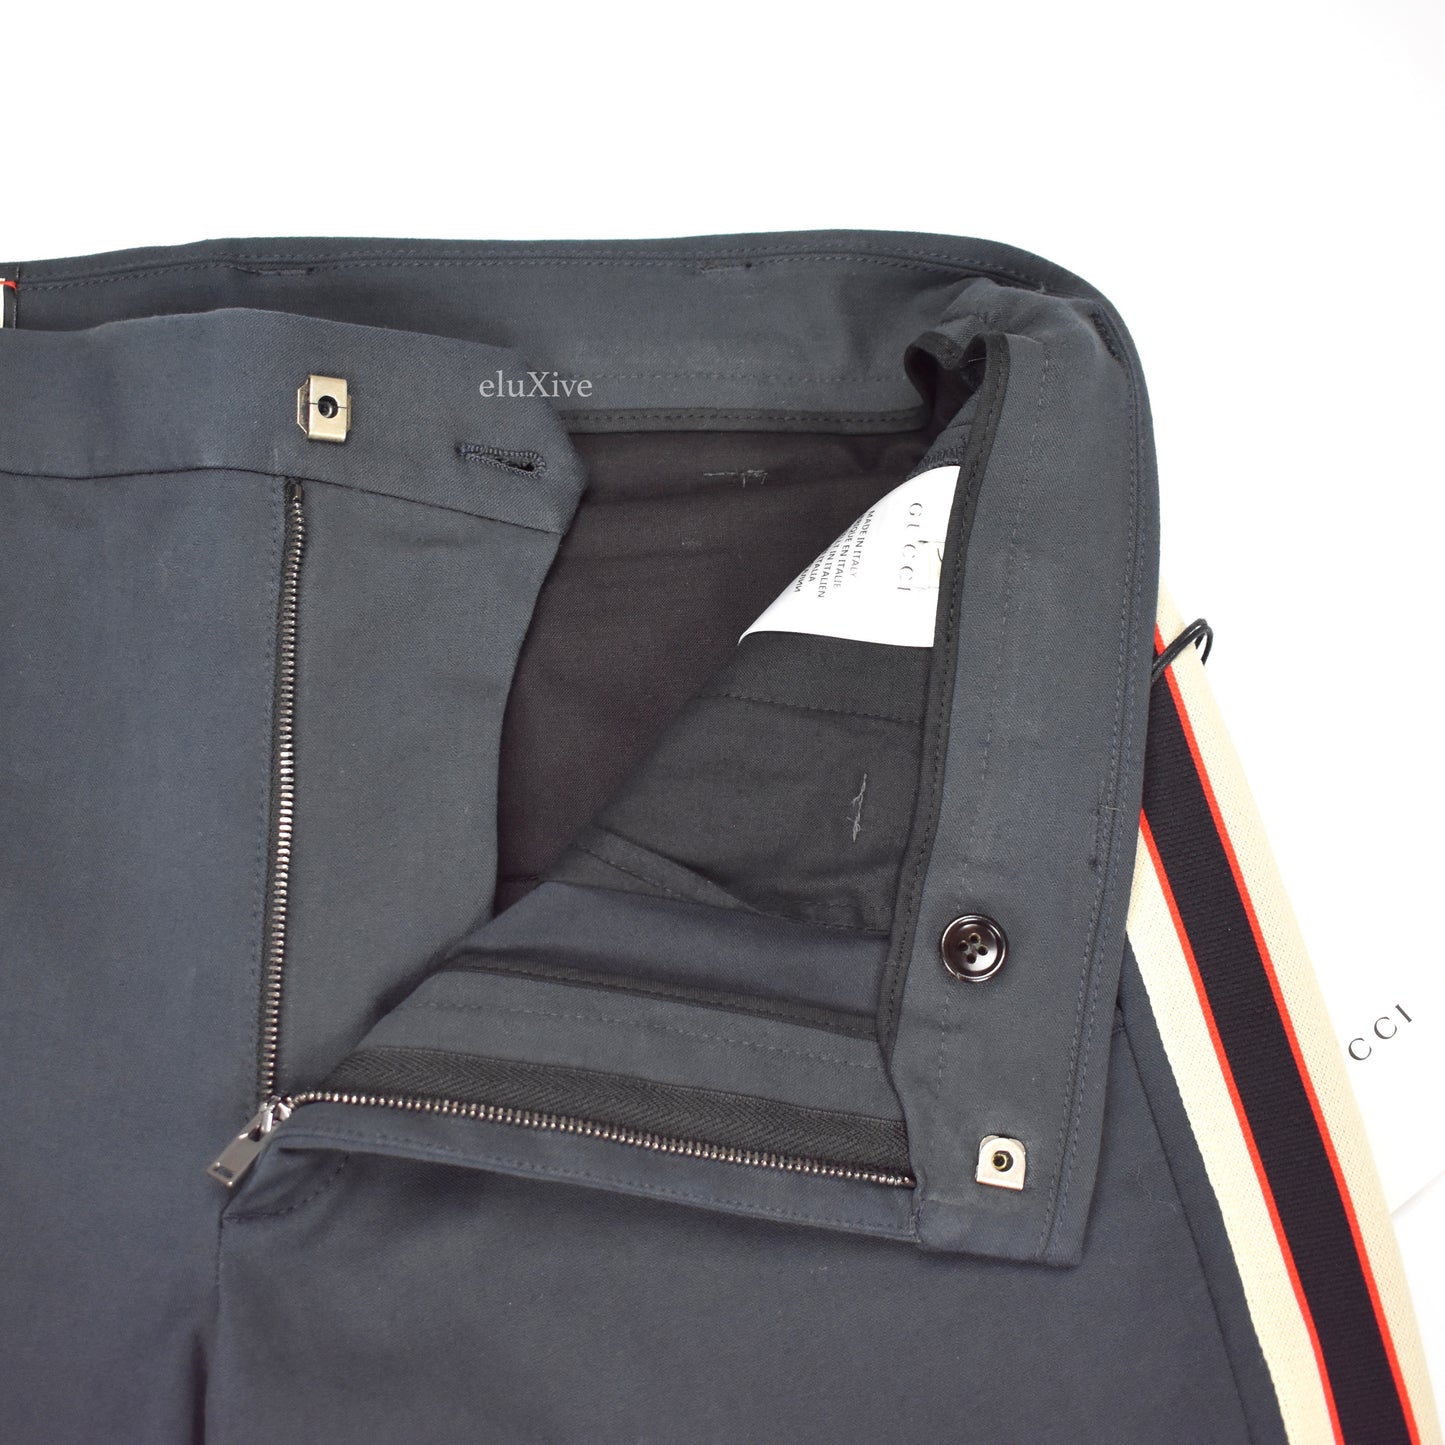 Gucci - Navy Side Stripe Logo Riding Pants